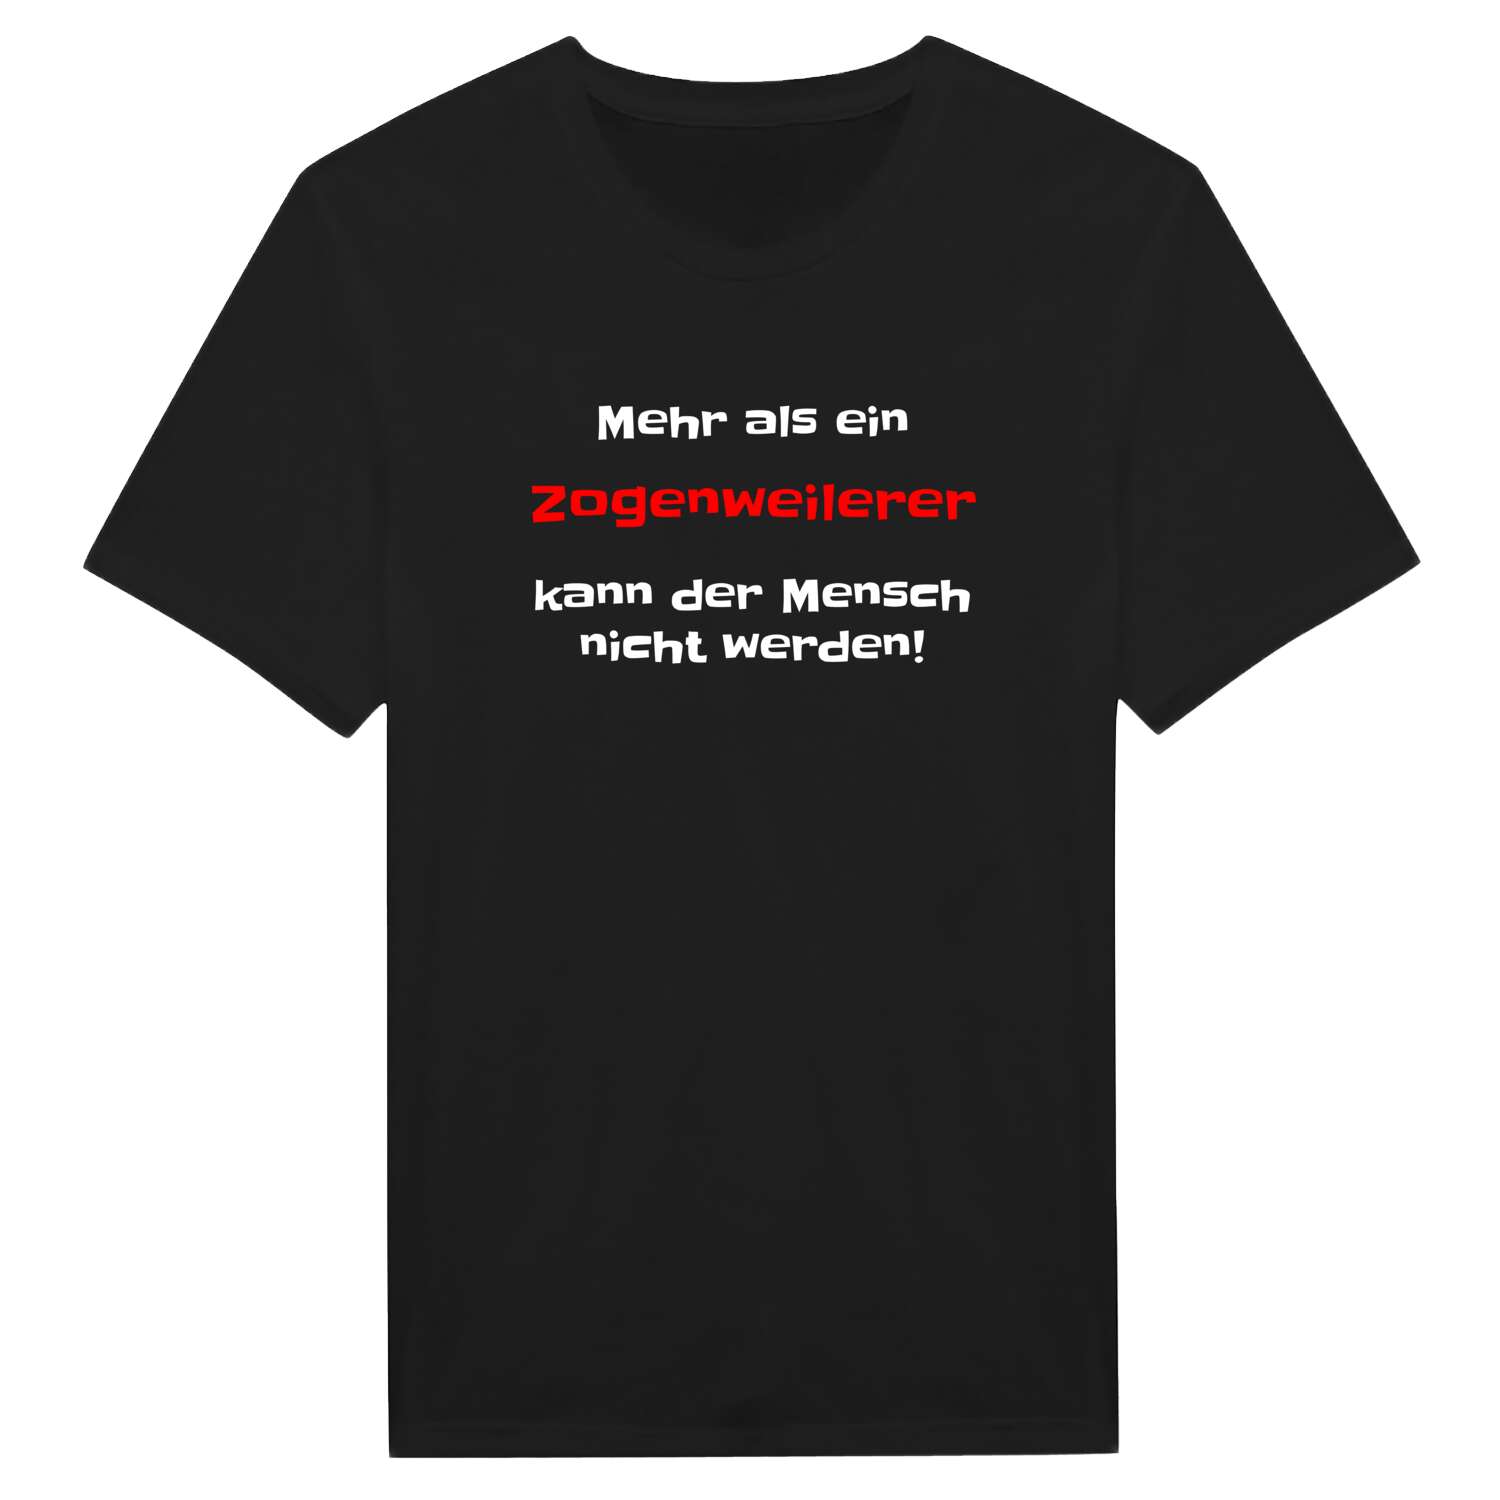 Zogenweiler T-Shirt »Mehr als ein«